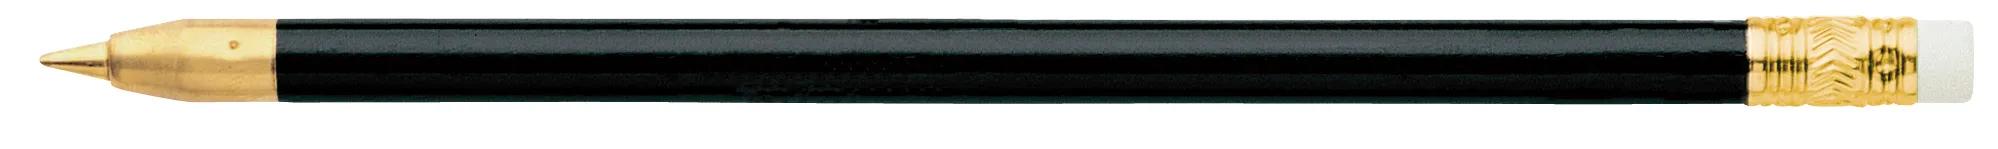 Arrowhead Pen 1 of 12